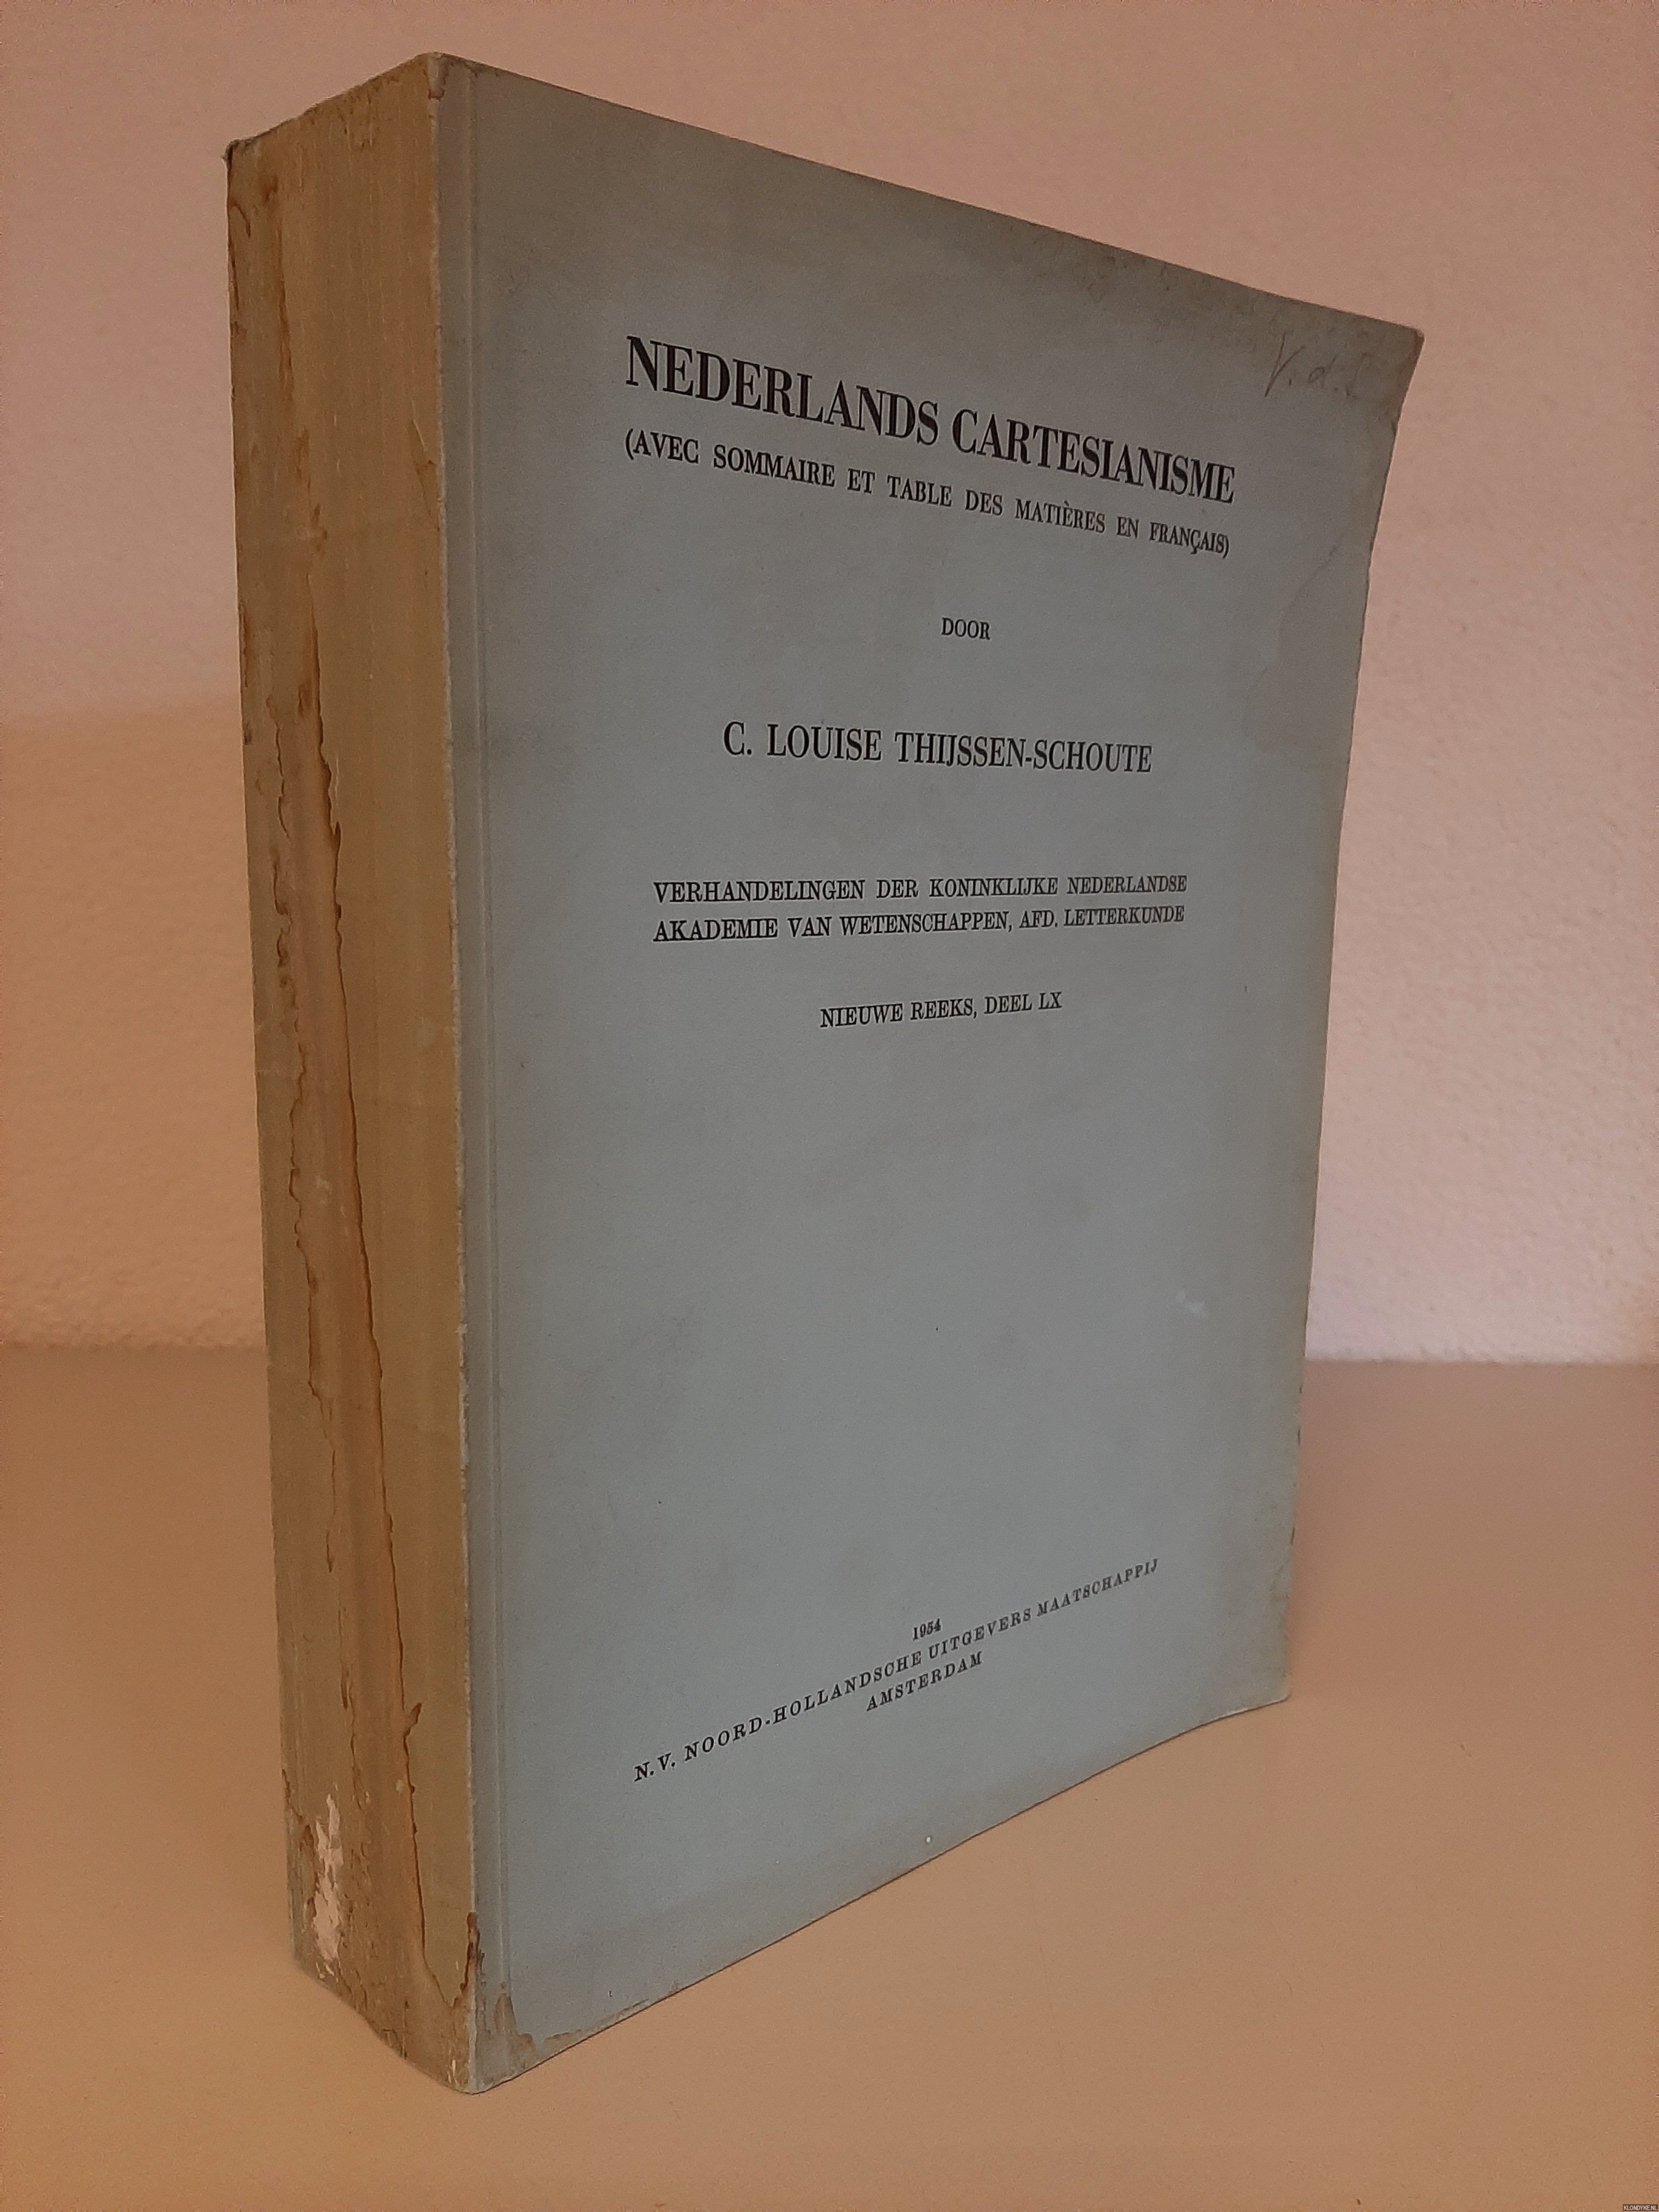 Thijssen-Schoute, C. Louise - Nederlands cartesianisme *met GESIGNEERD briefje*